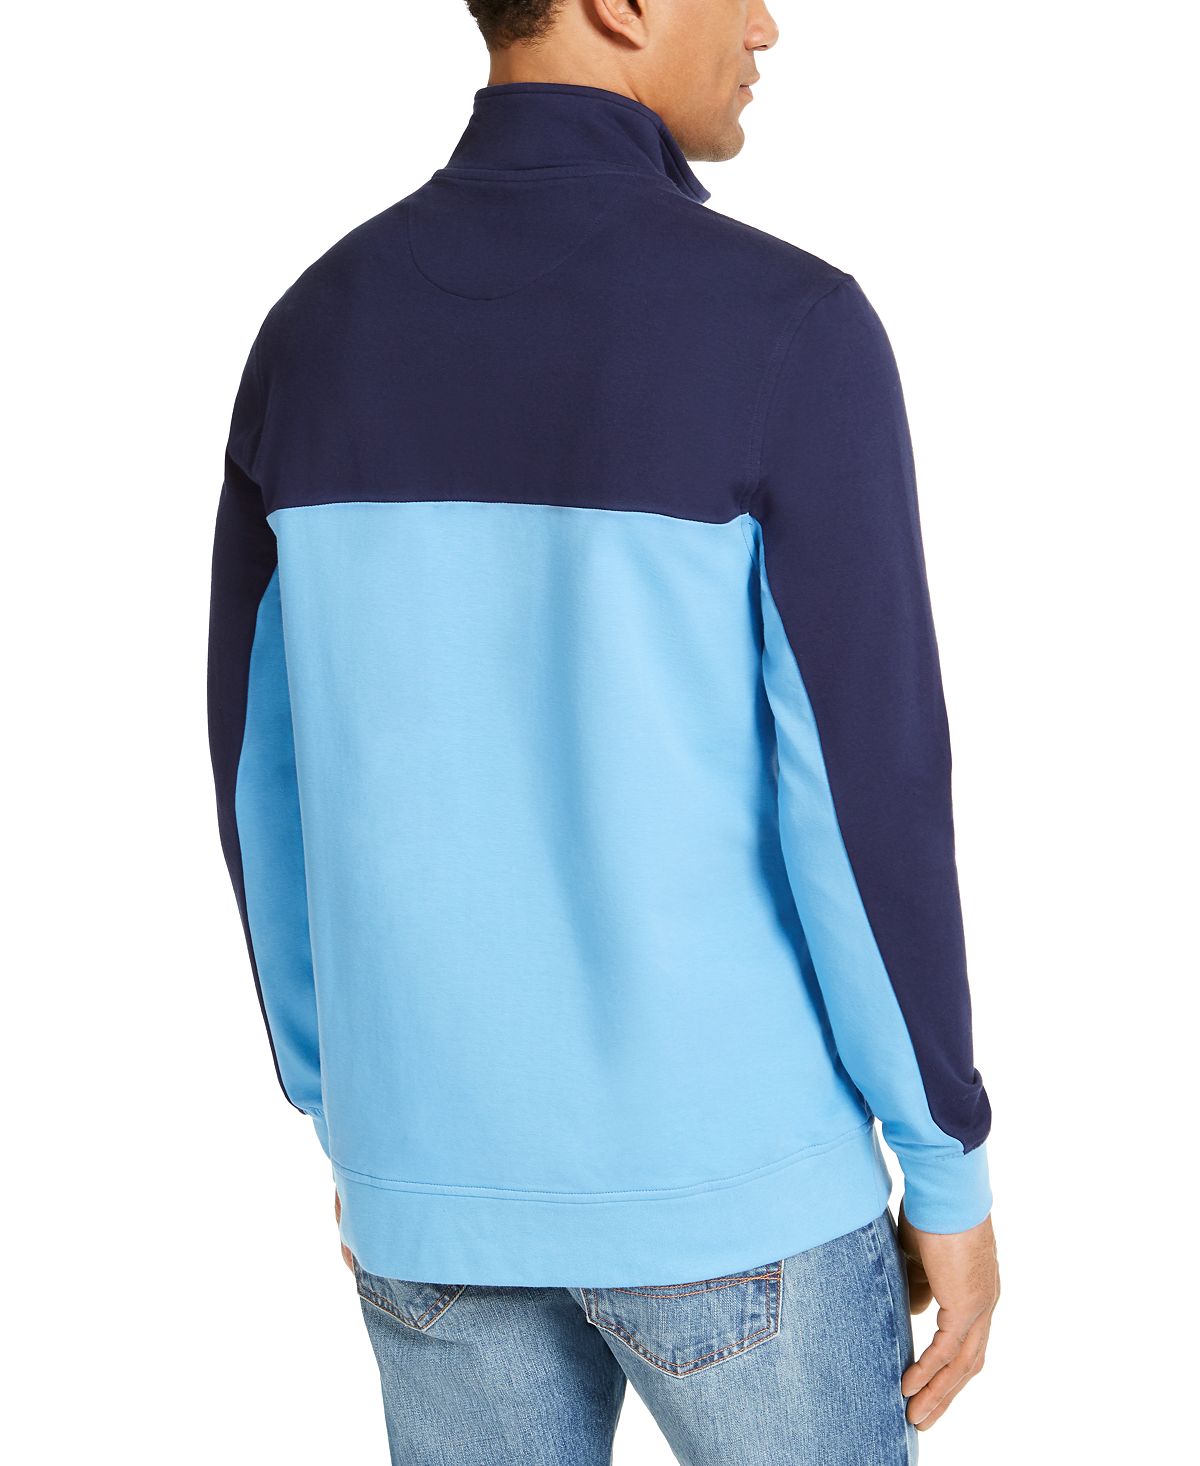 Club Room Regular-fit Colorblocked 1/4-zip Sweatshirt Ls Two Tone 1/4 Zip